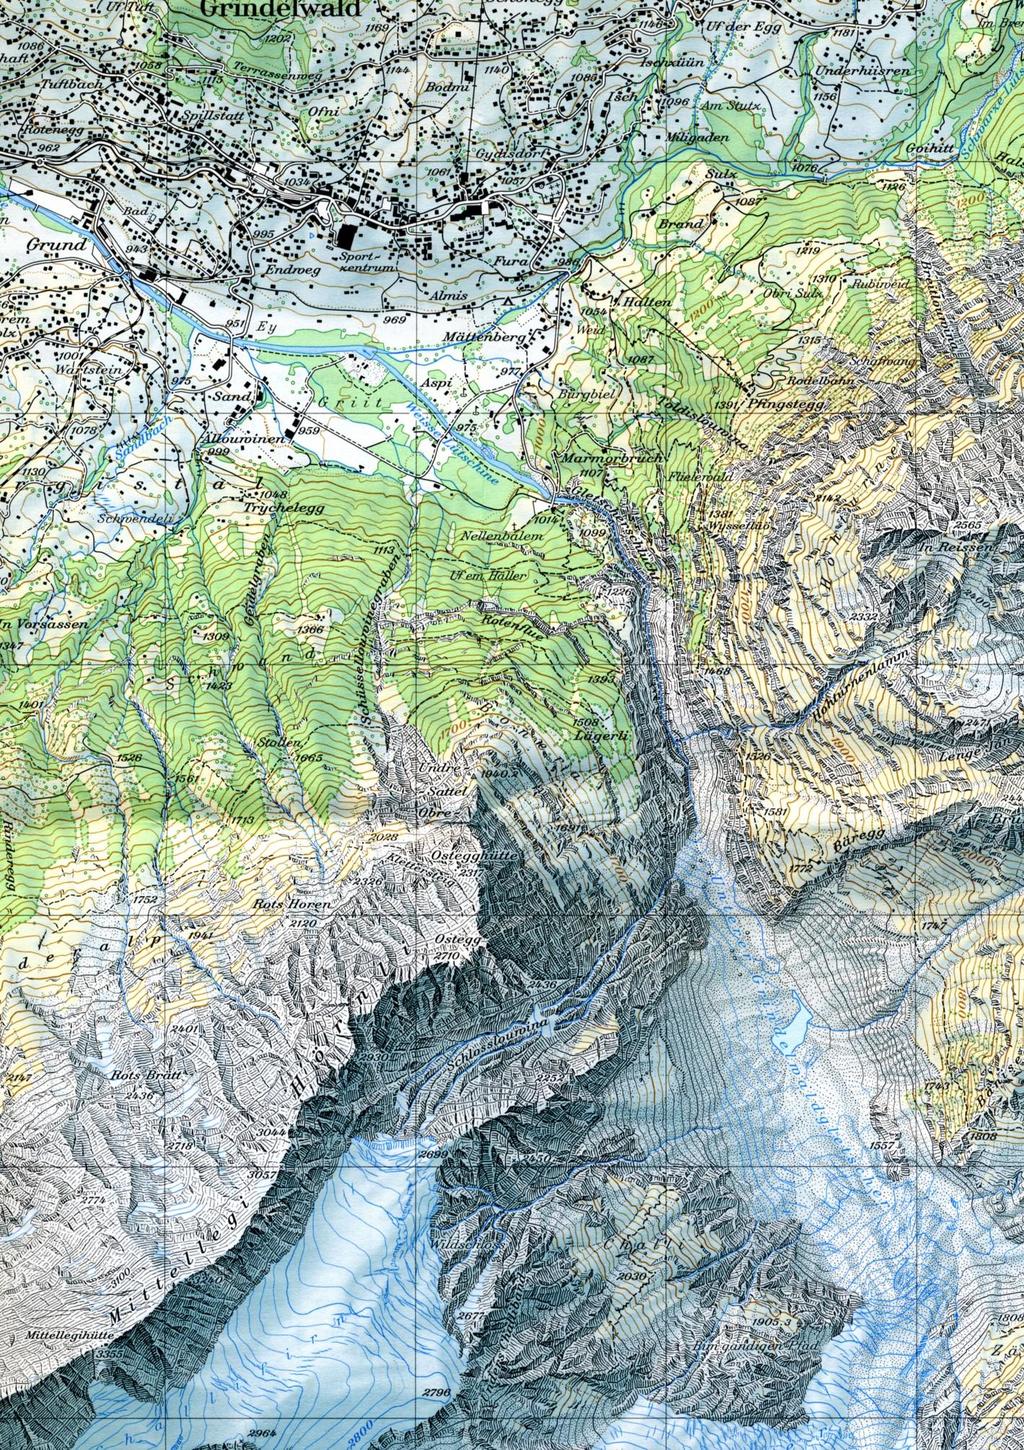 12/12 Kartenausschnitt Unterer Grindelwaldgletscher Um eine massstabgetreue Karte zu erhalten, auf A4 drucken und Massstab überprüfen (4 cm = 1